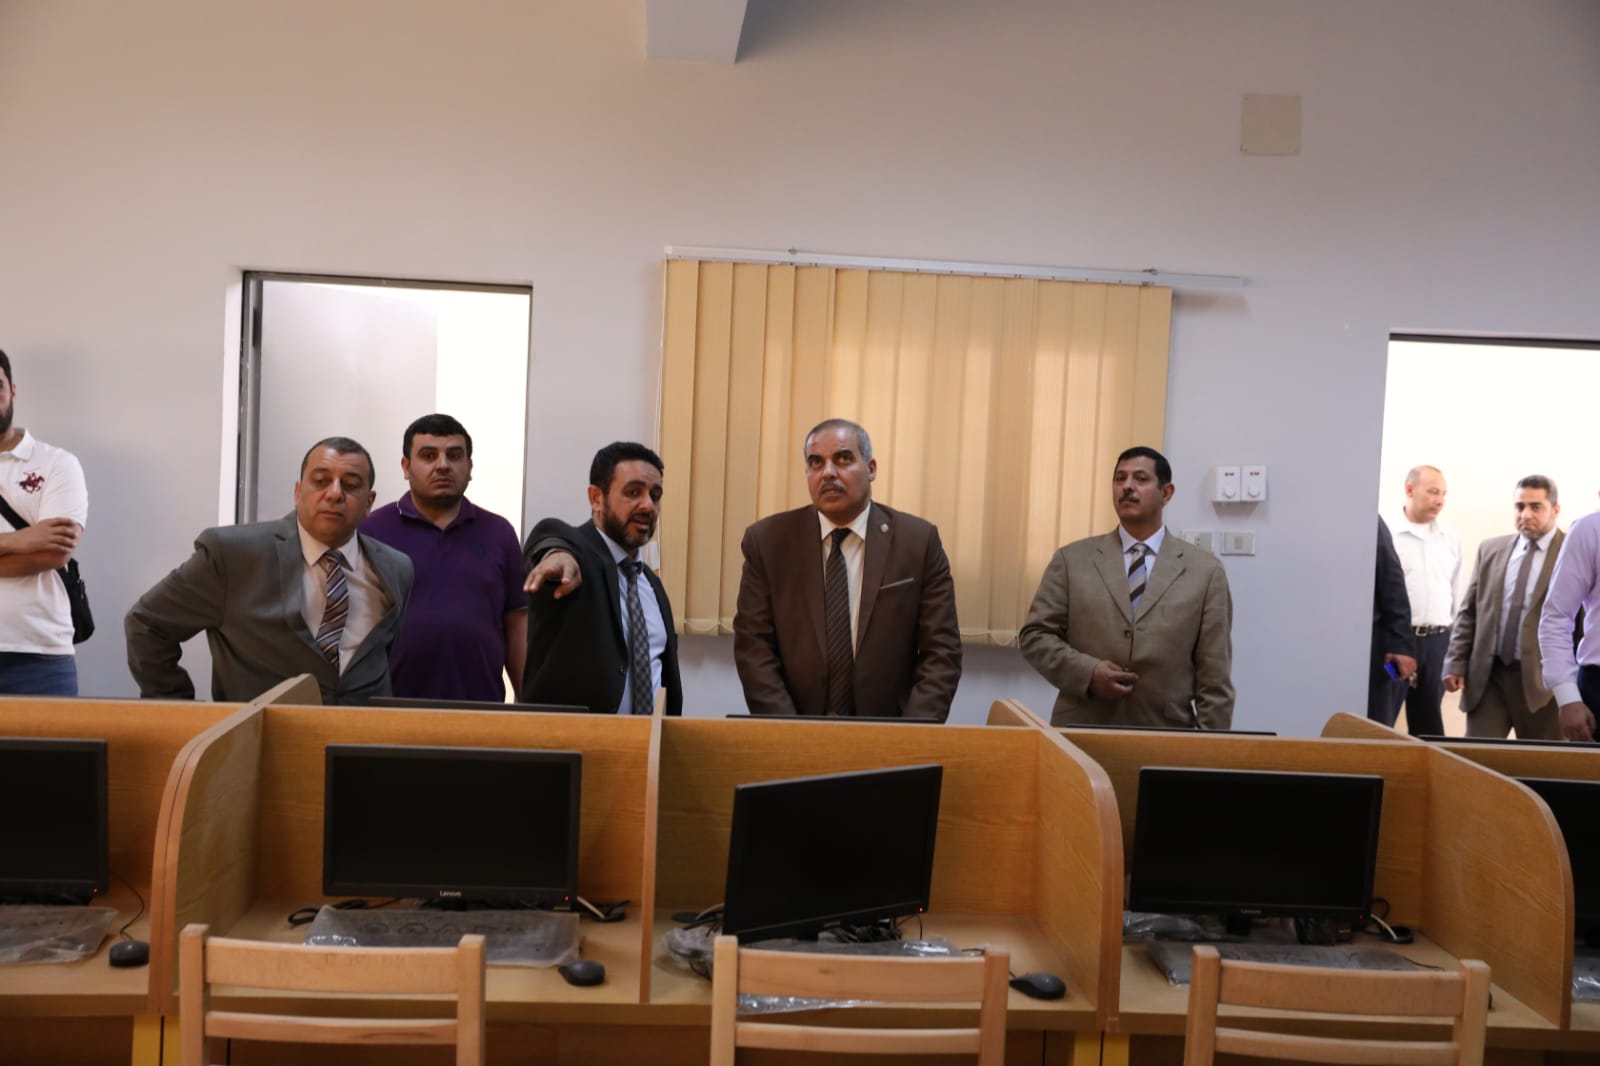 رئيس جامعة الأزهر يتفقد مركز الاختبارات الإلكترونية بمدينة نصر